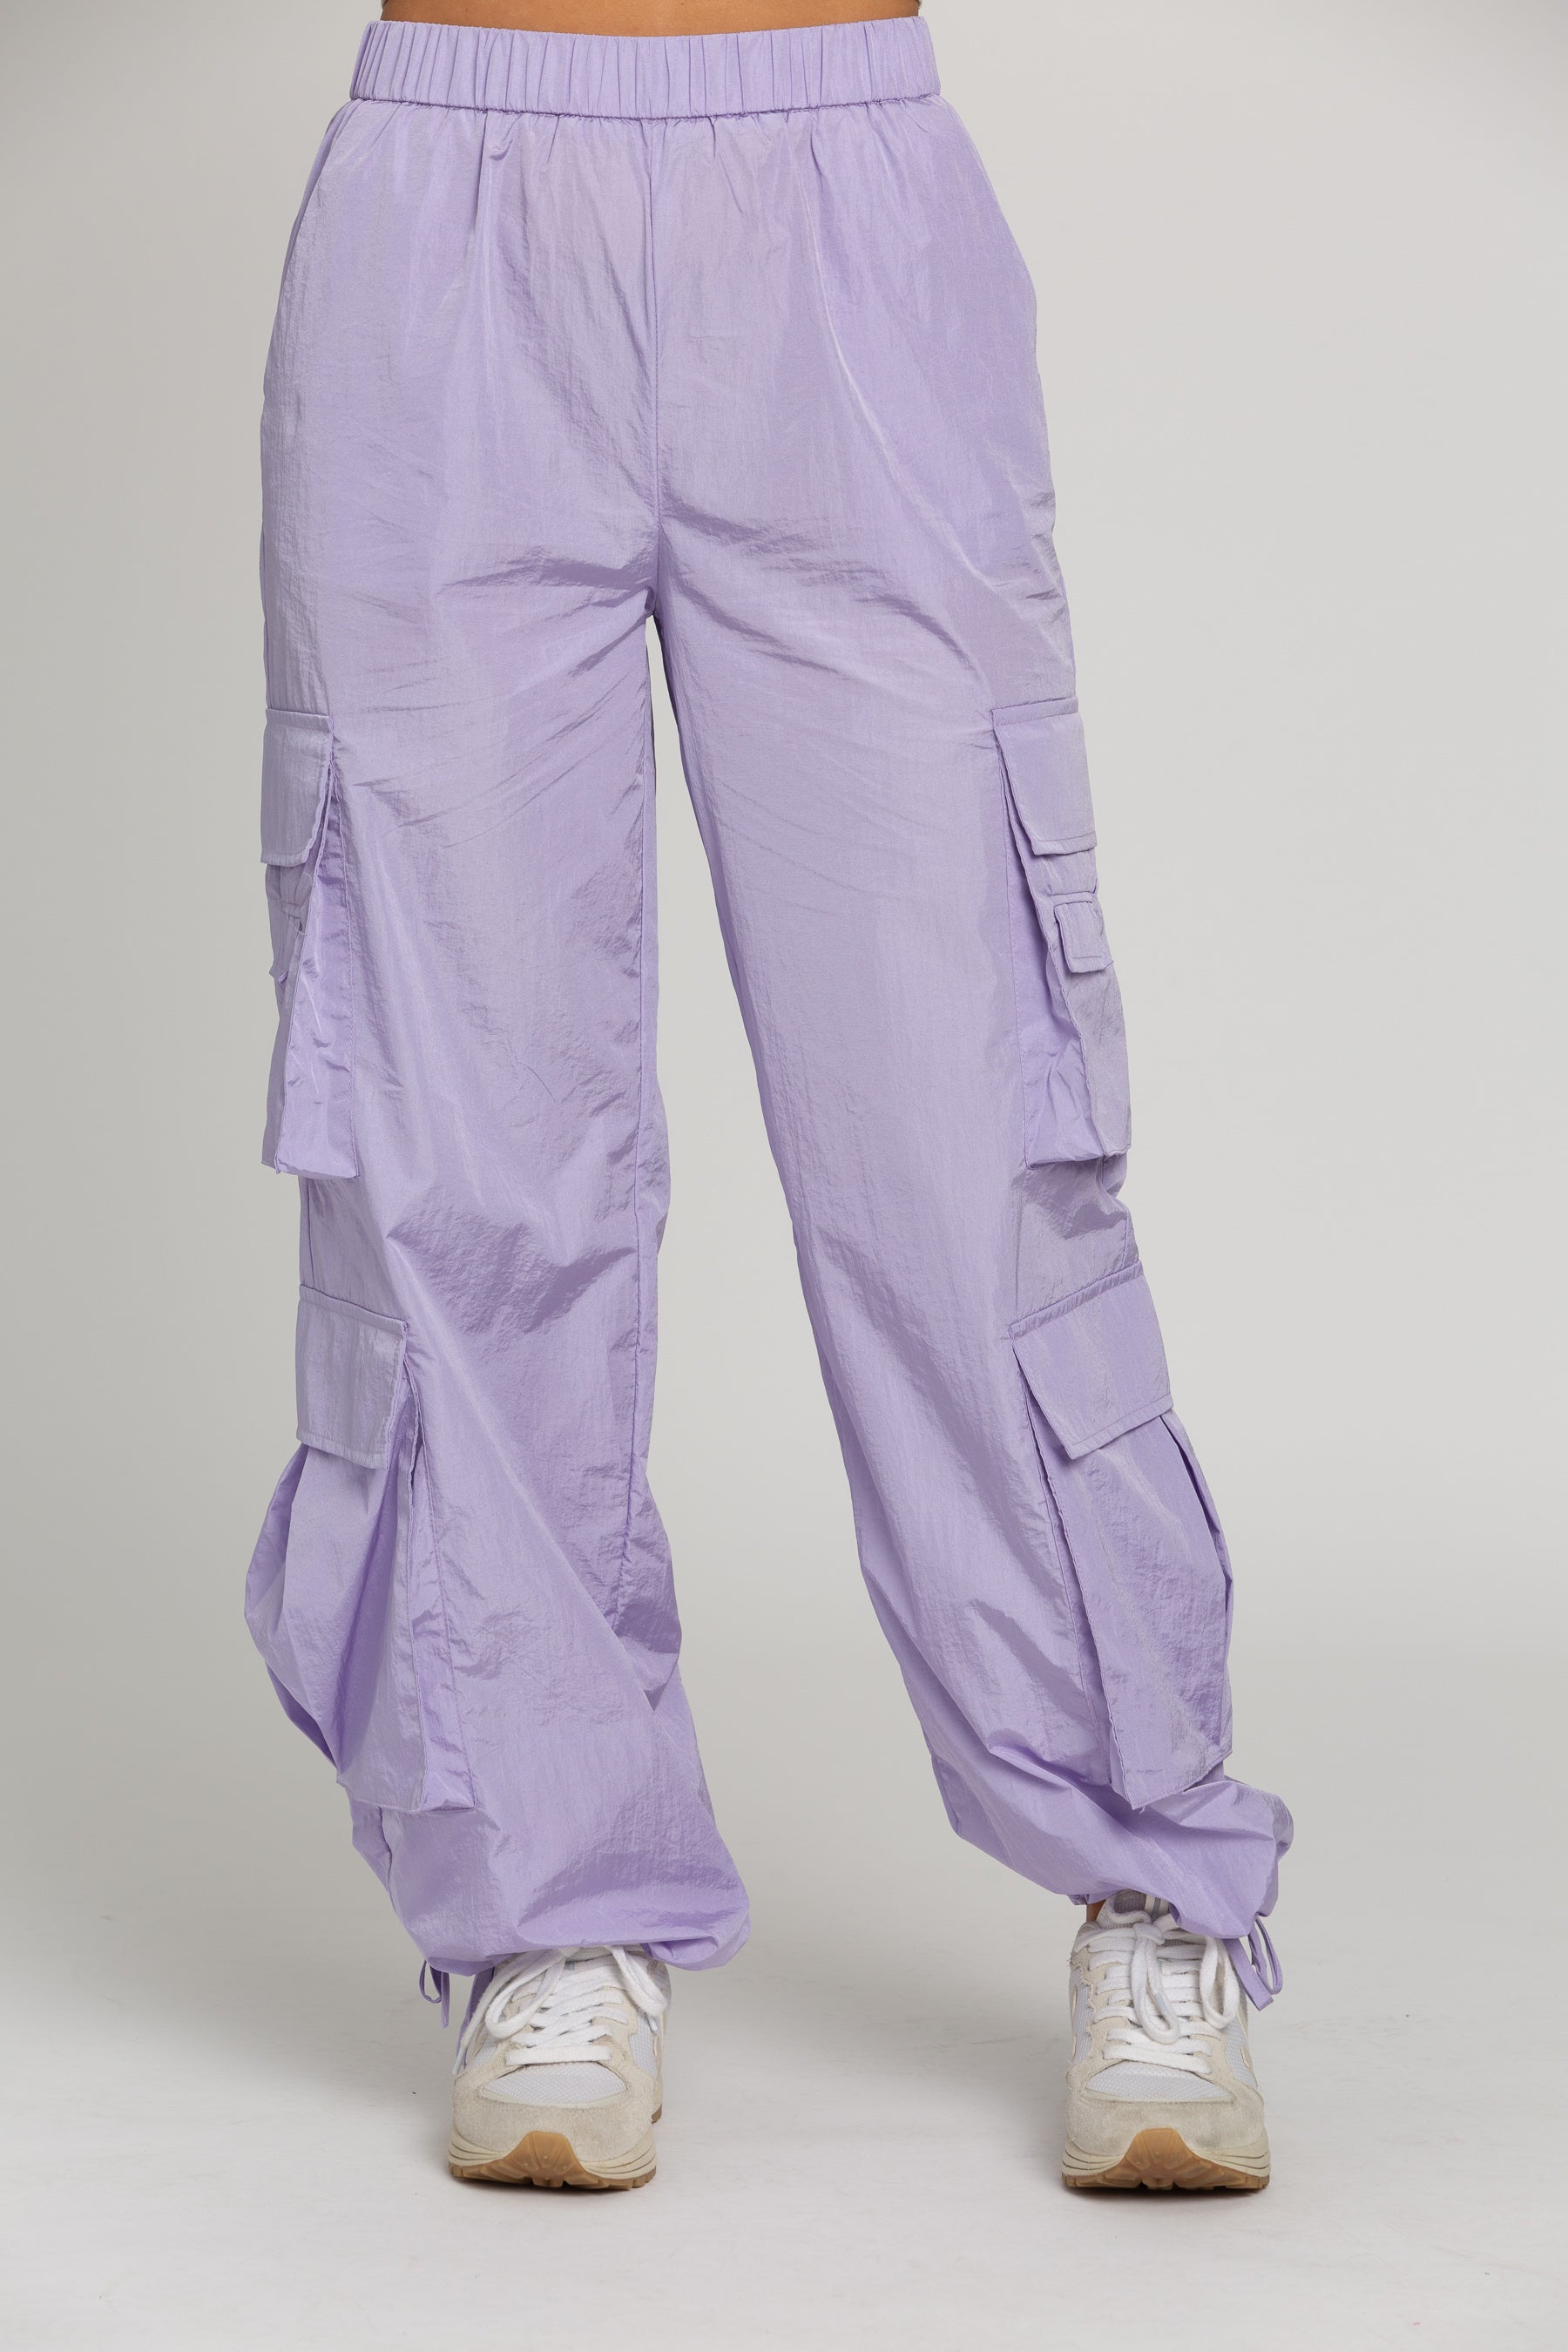 Shiny Purple Cargo Utility Pants – Gold Hinge